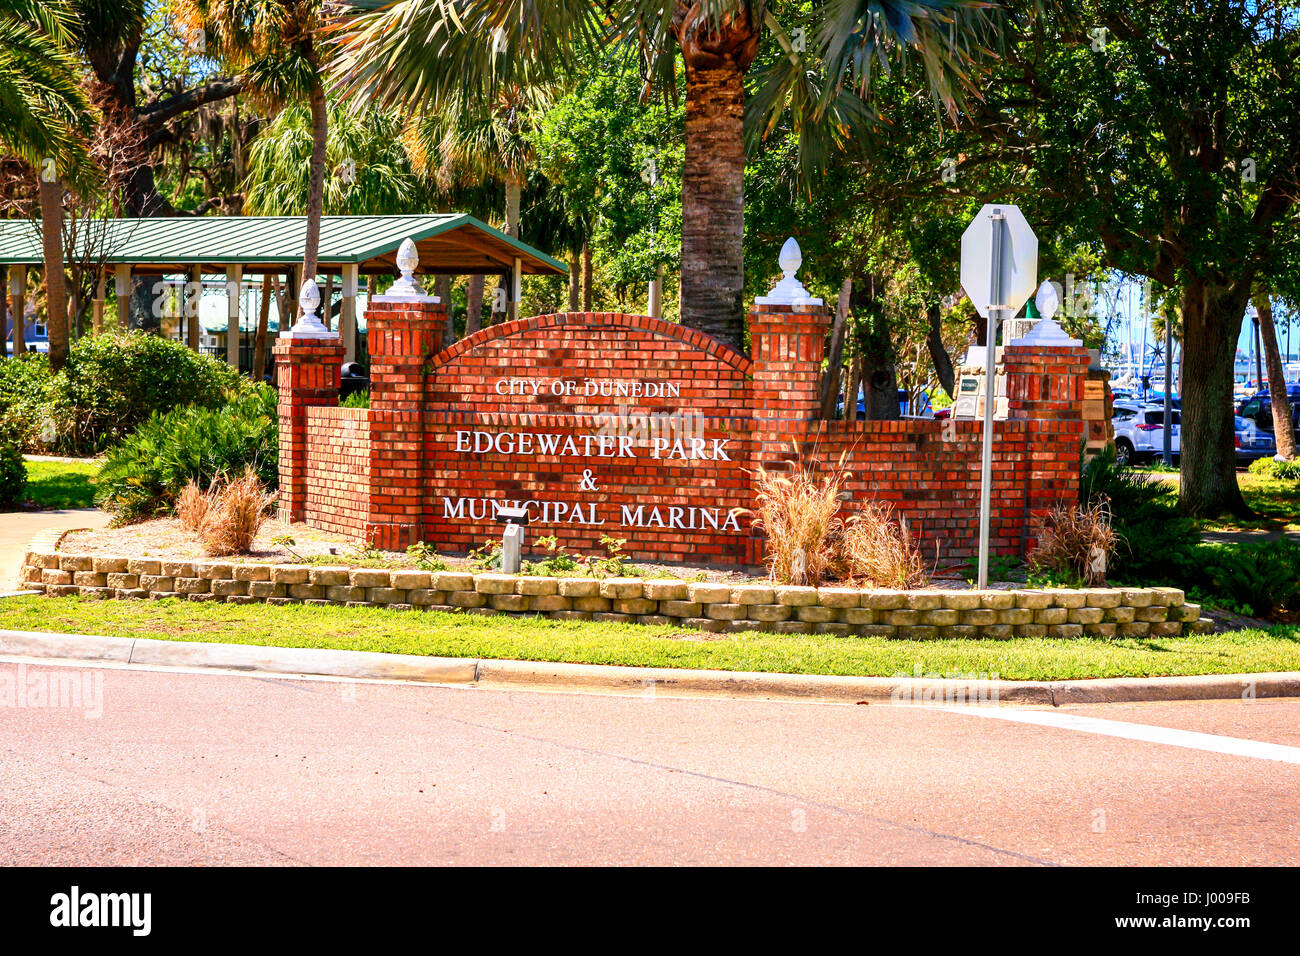 Edgewater Park und Municipal Marina Wand unterzeichnen in Dunedin, Florida Stockfoto